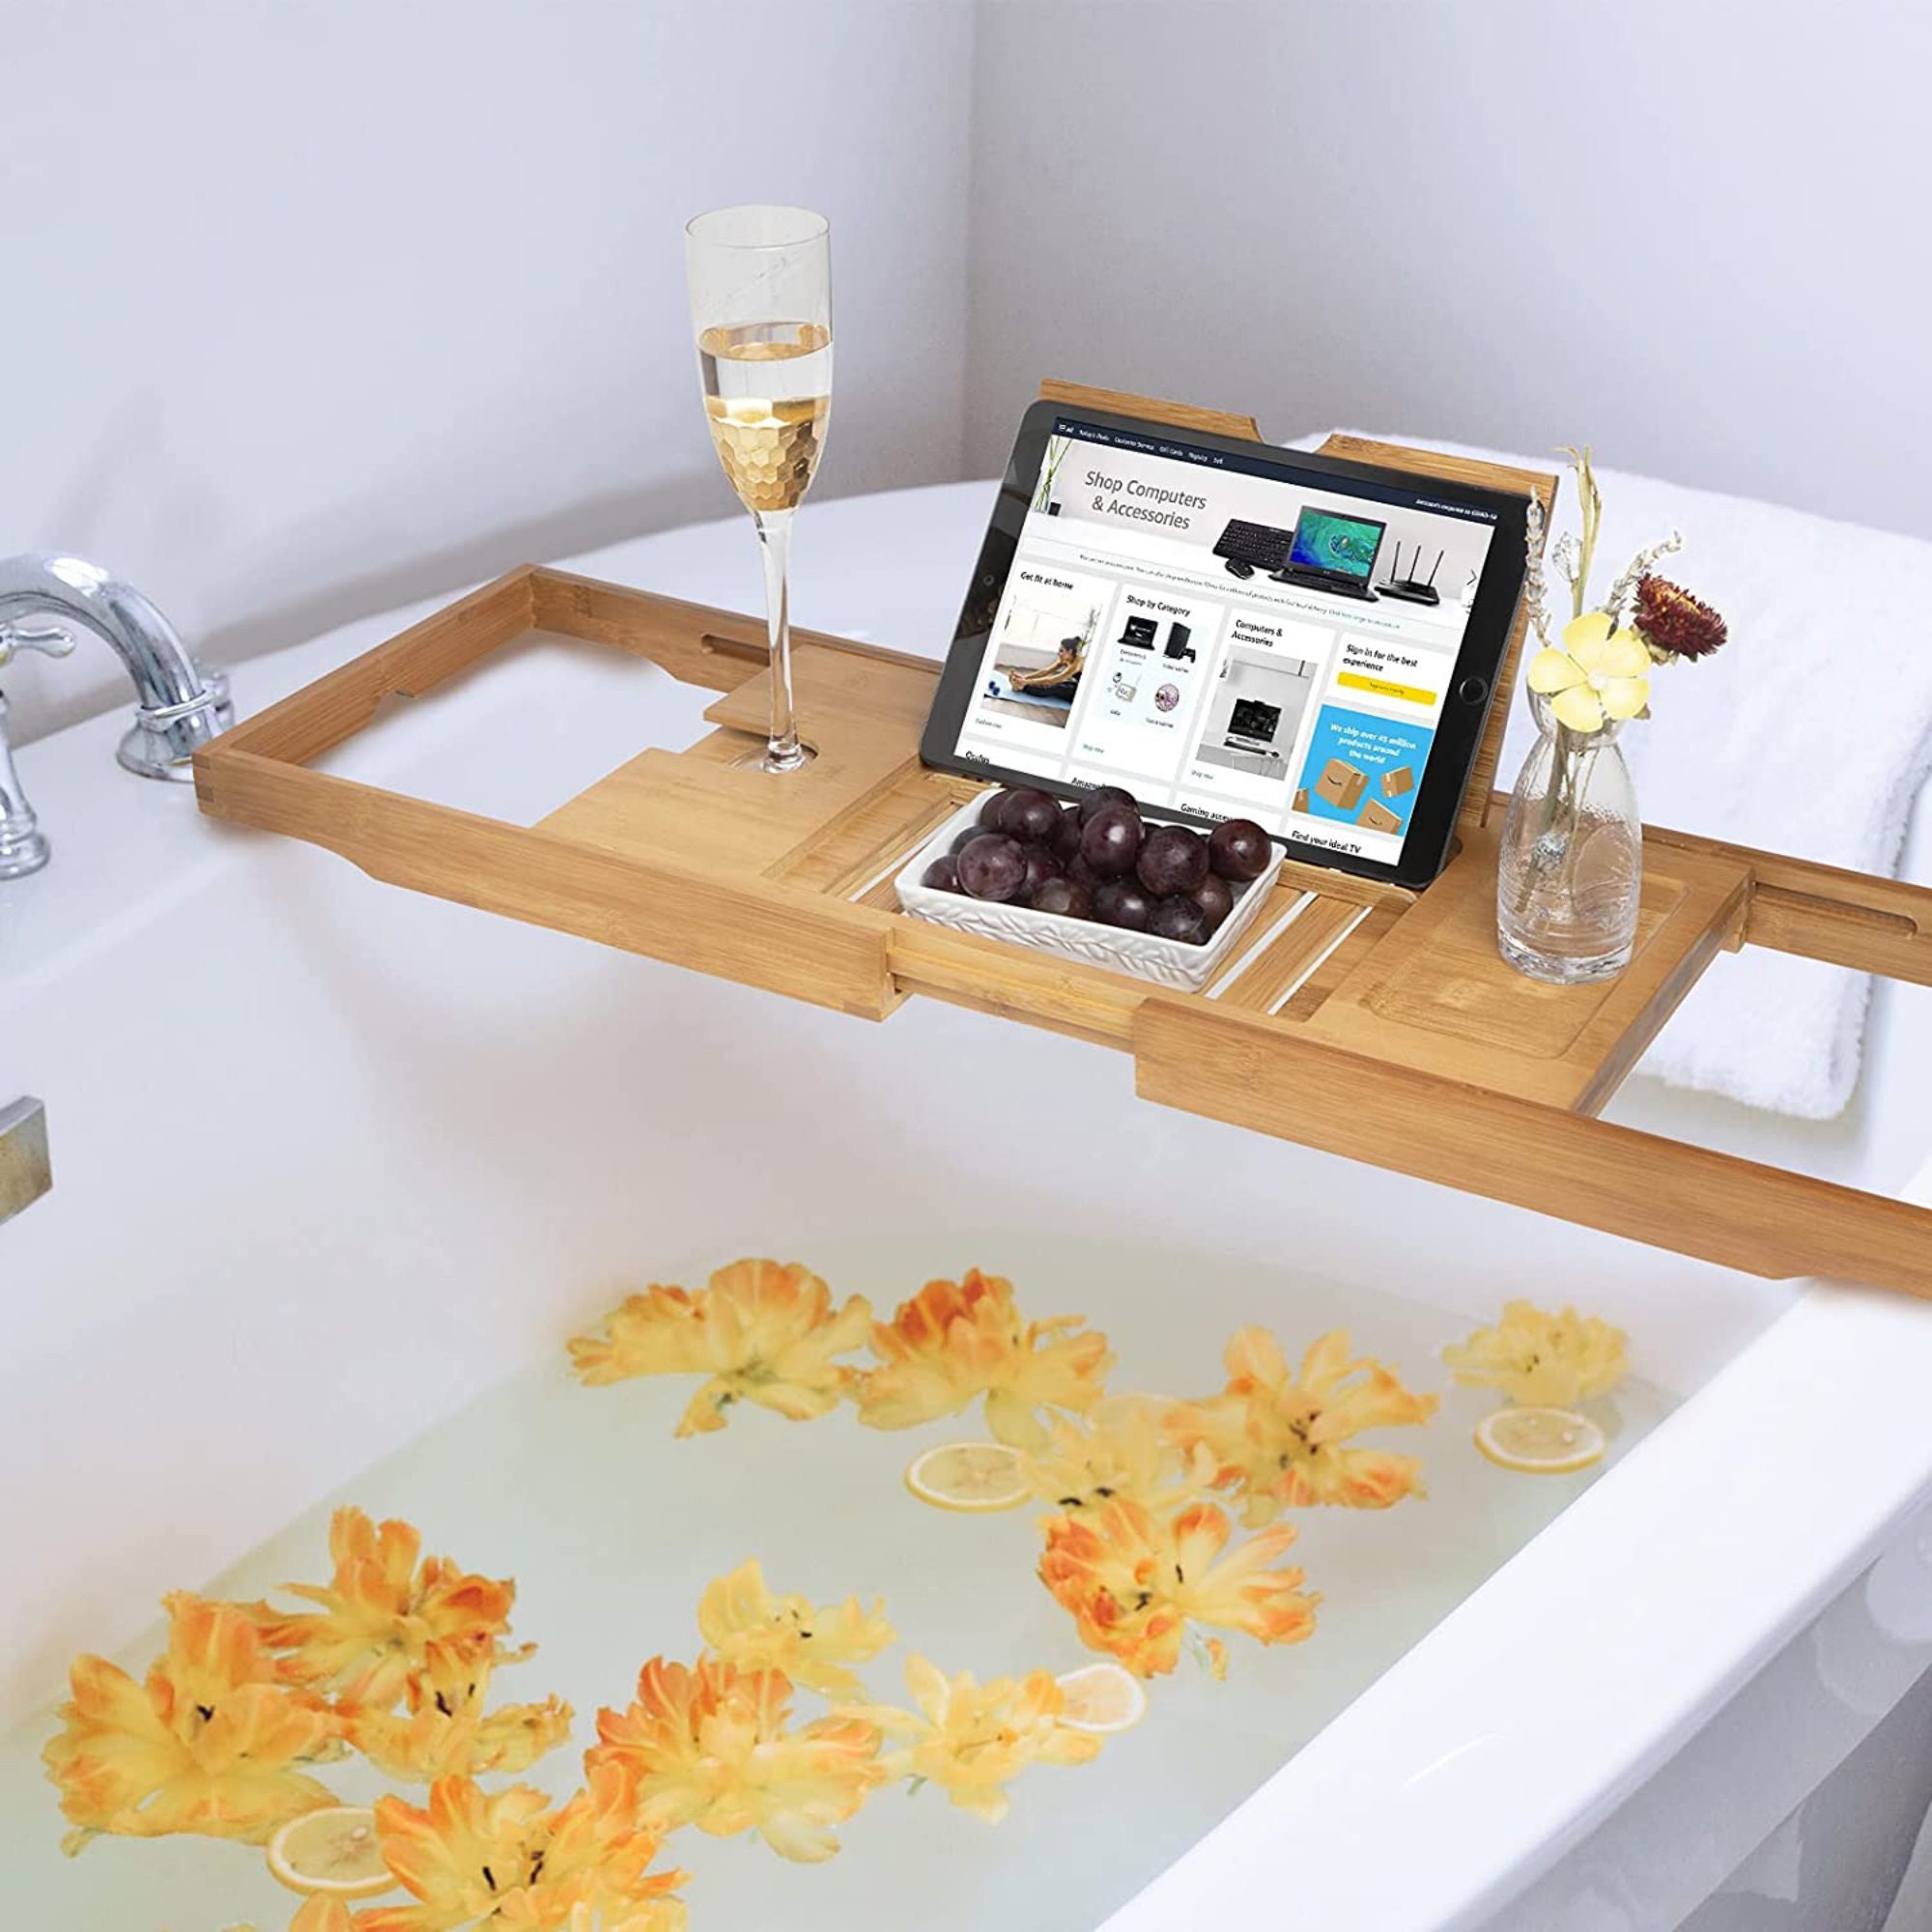 Bathtub Caddy Tray, Expandable Bath Shelf, Adjustable Plastic